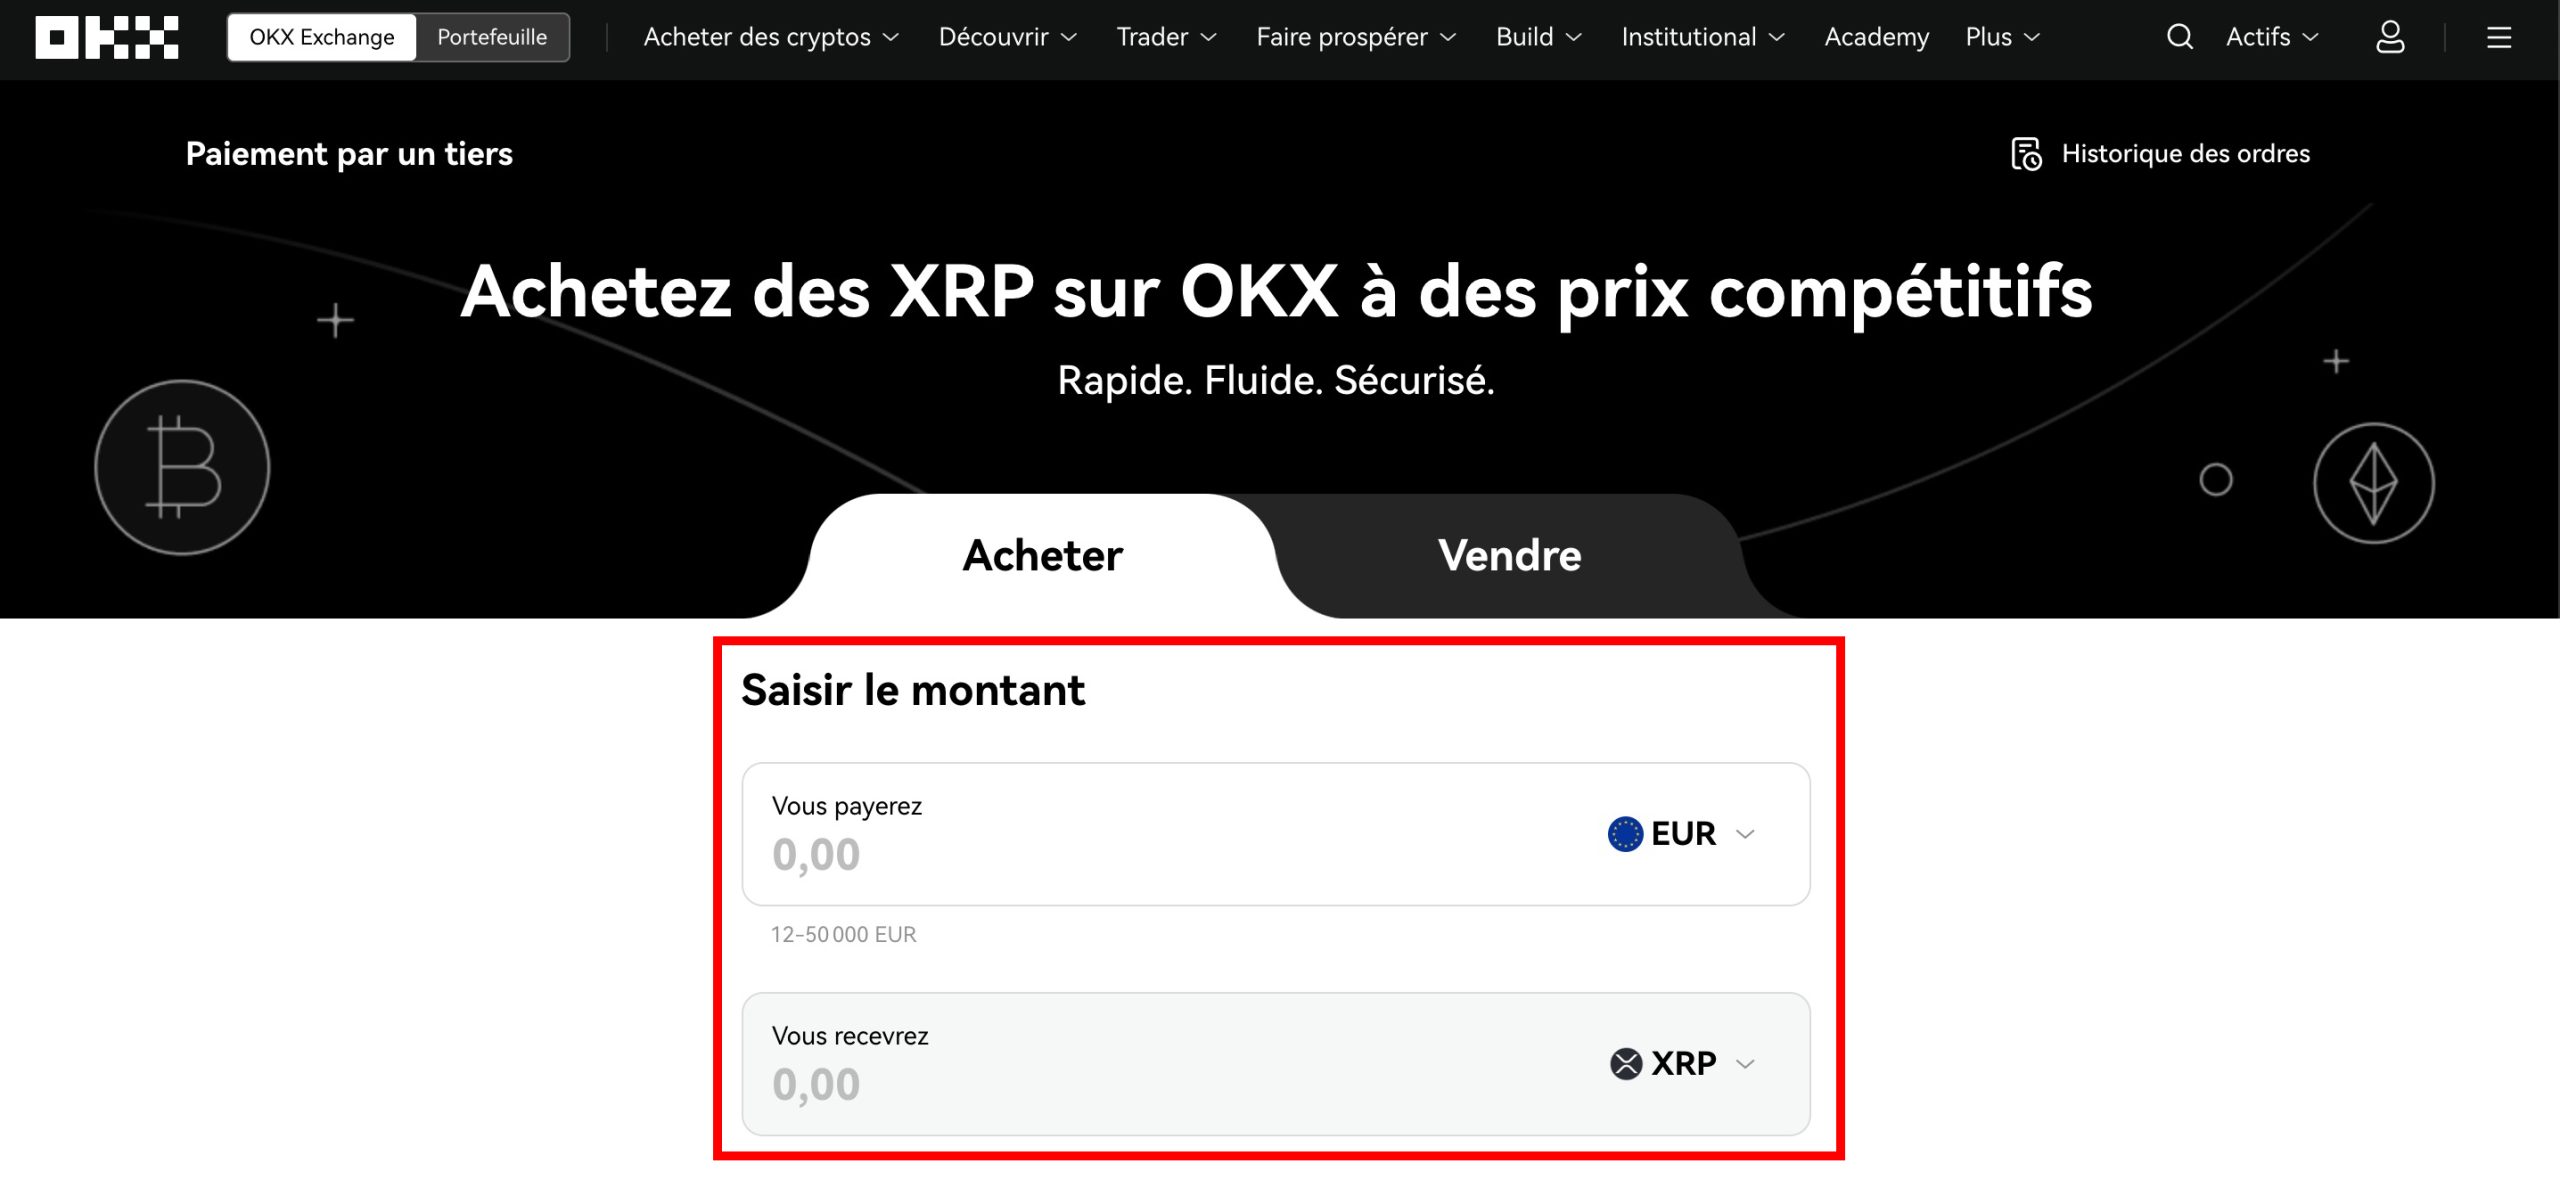 OKX - Paiement tiers XRP